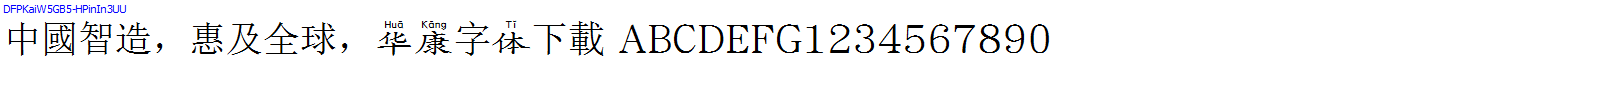 華康字體DFPKaiW5GB5-HPinIn3UU.TTF